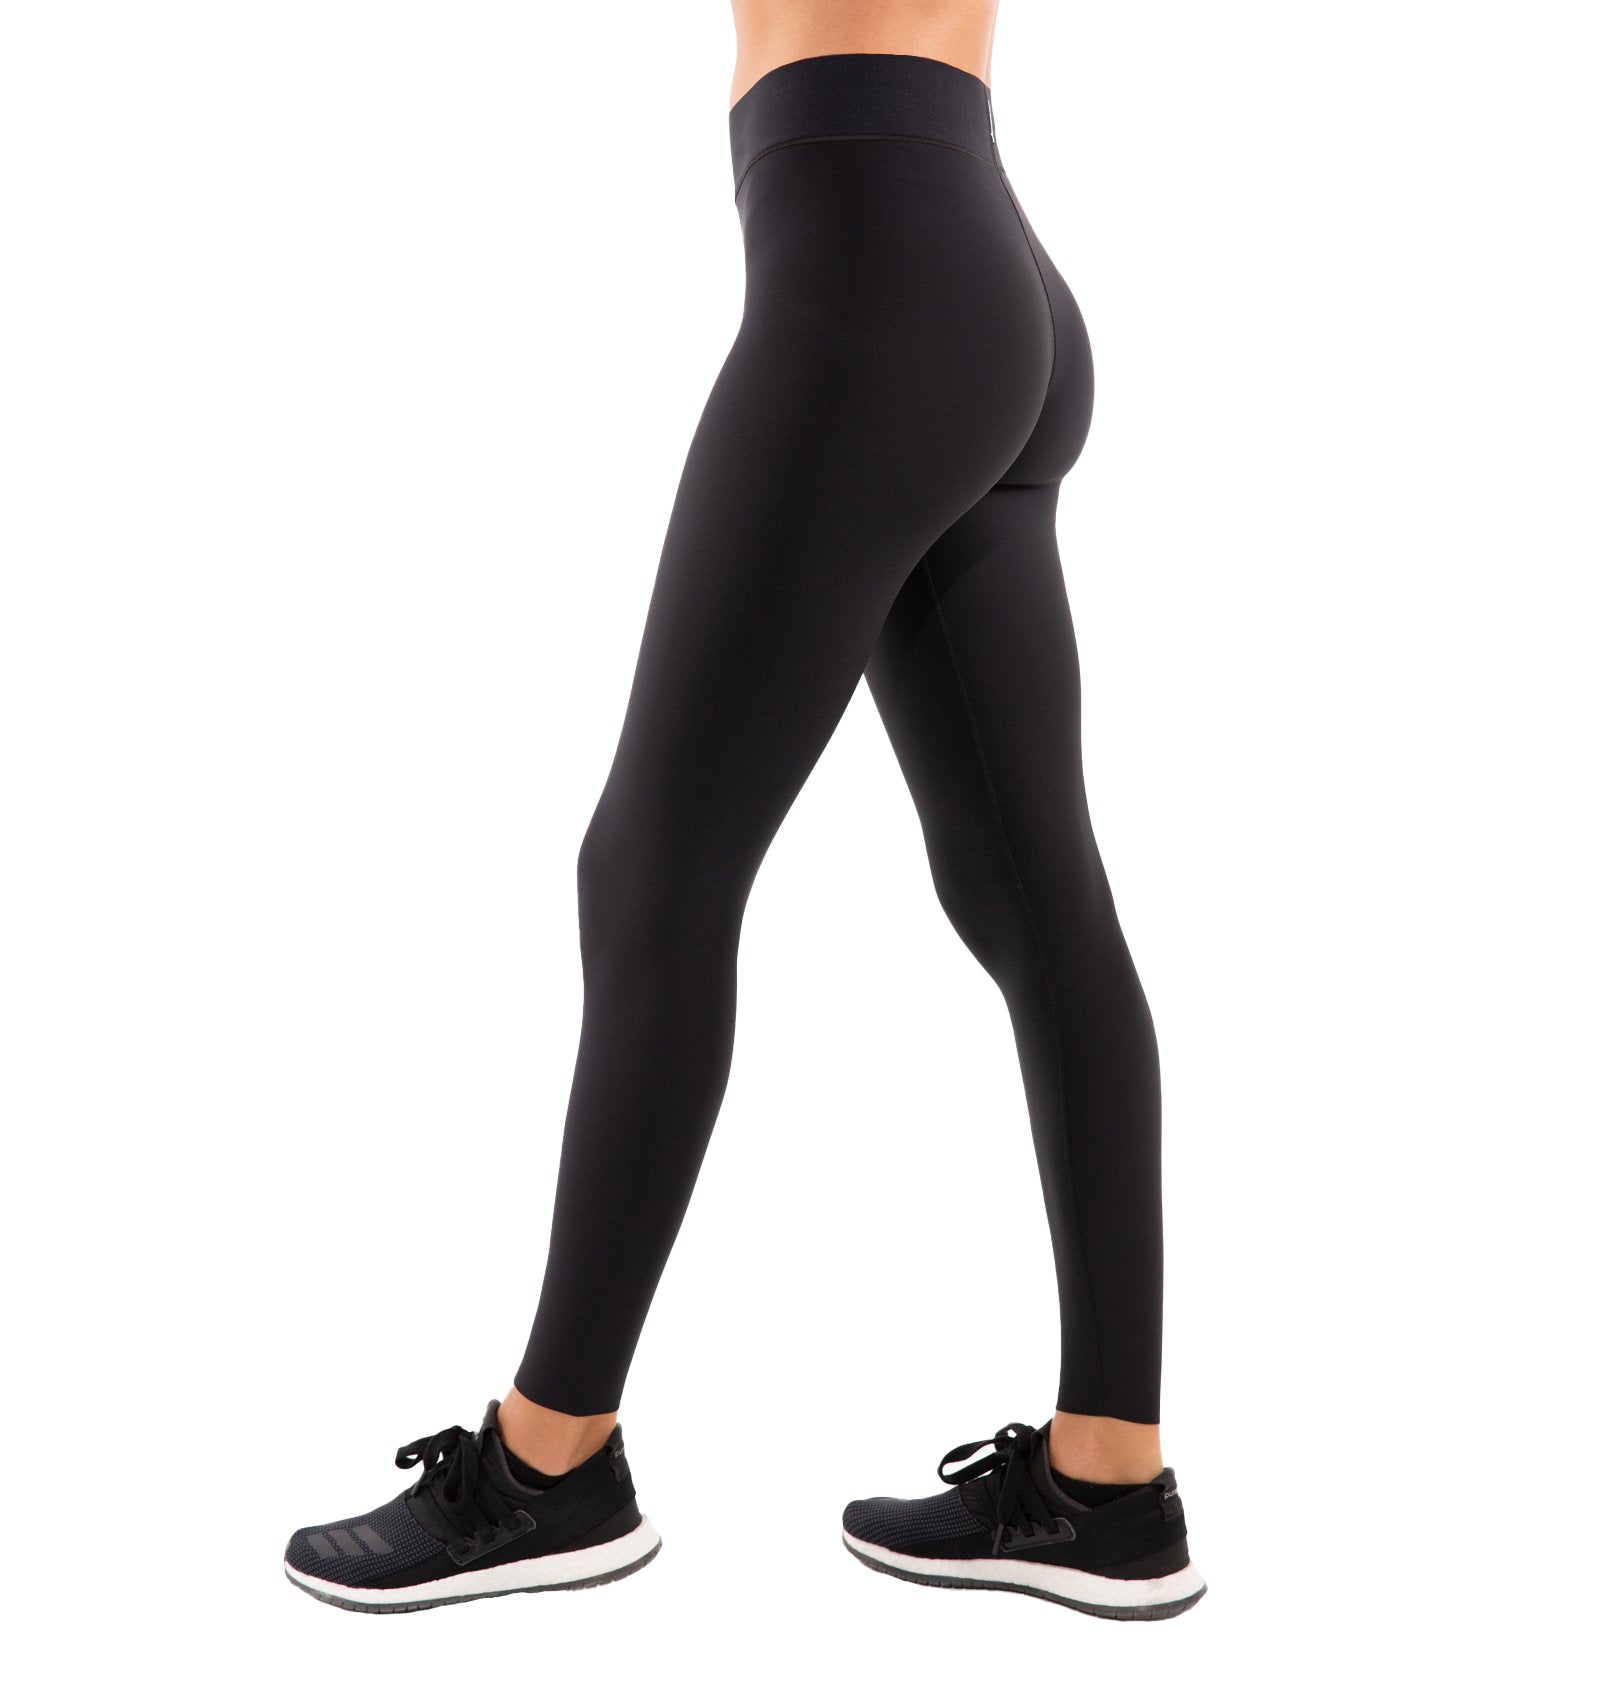 $178 Ultracor Women's Black Star Side High Waist Legging Pants Size S